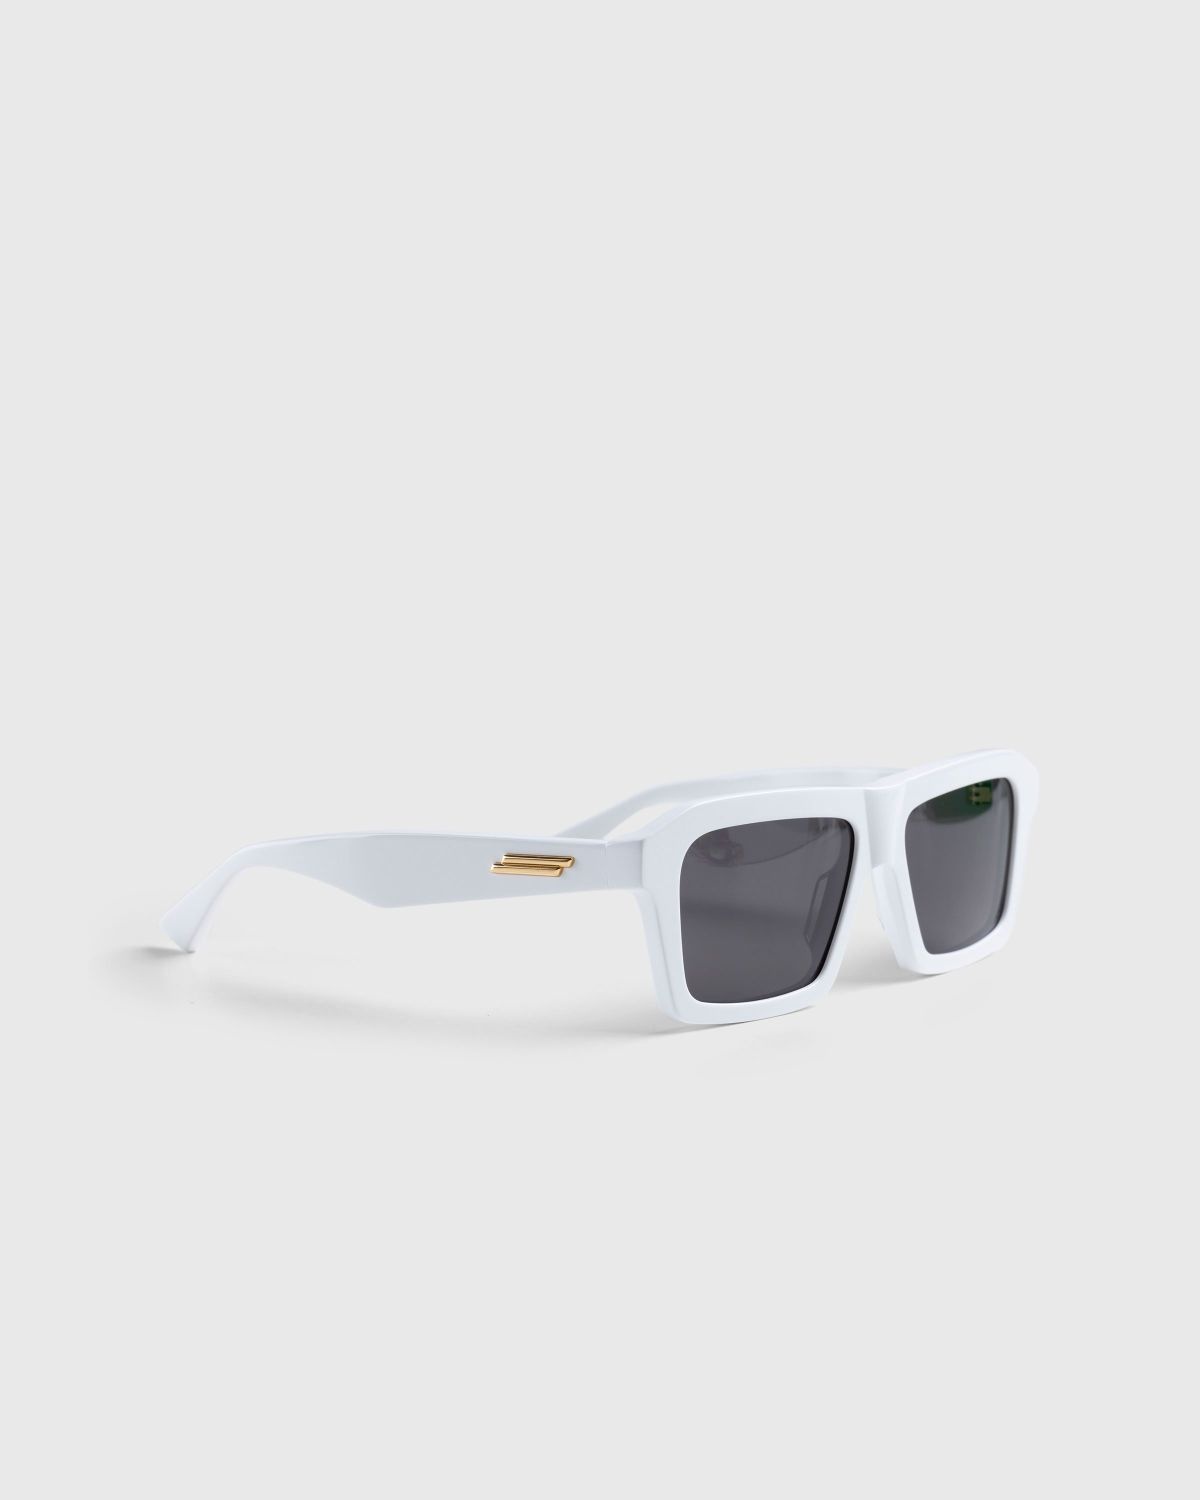 Bottega Veneta – Classic Square Sunglasses White/White/Grey - 2